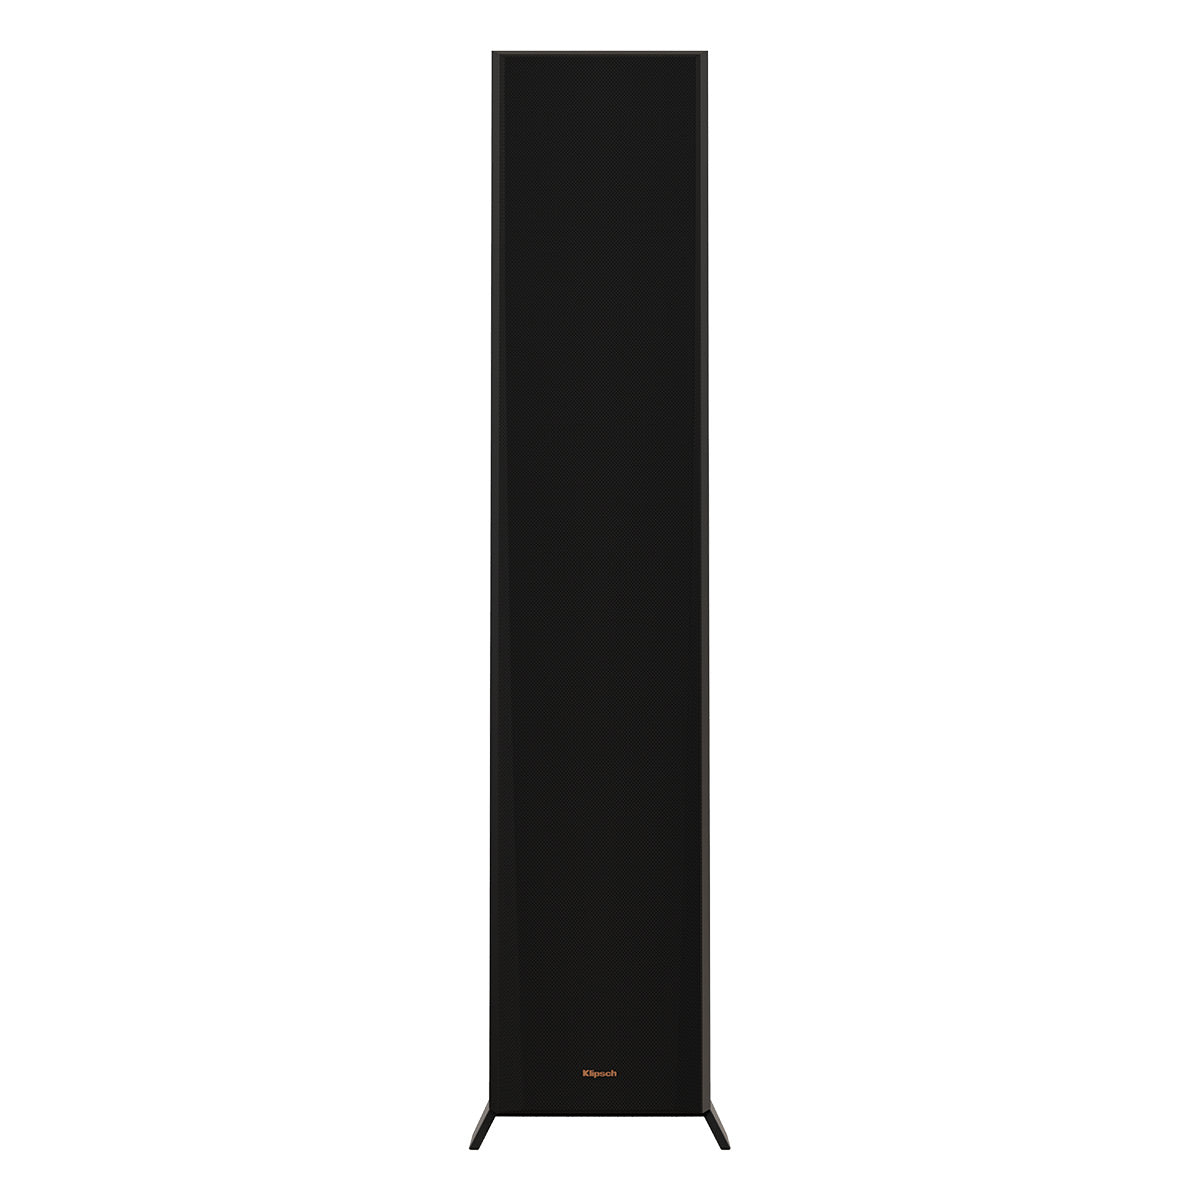 Klipsch Reference Premiere RP-6000F II Floorstanding Speakers - Pair (Ebony)